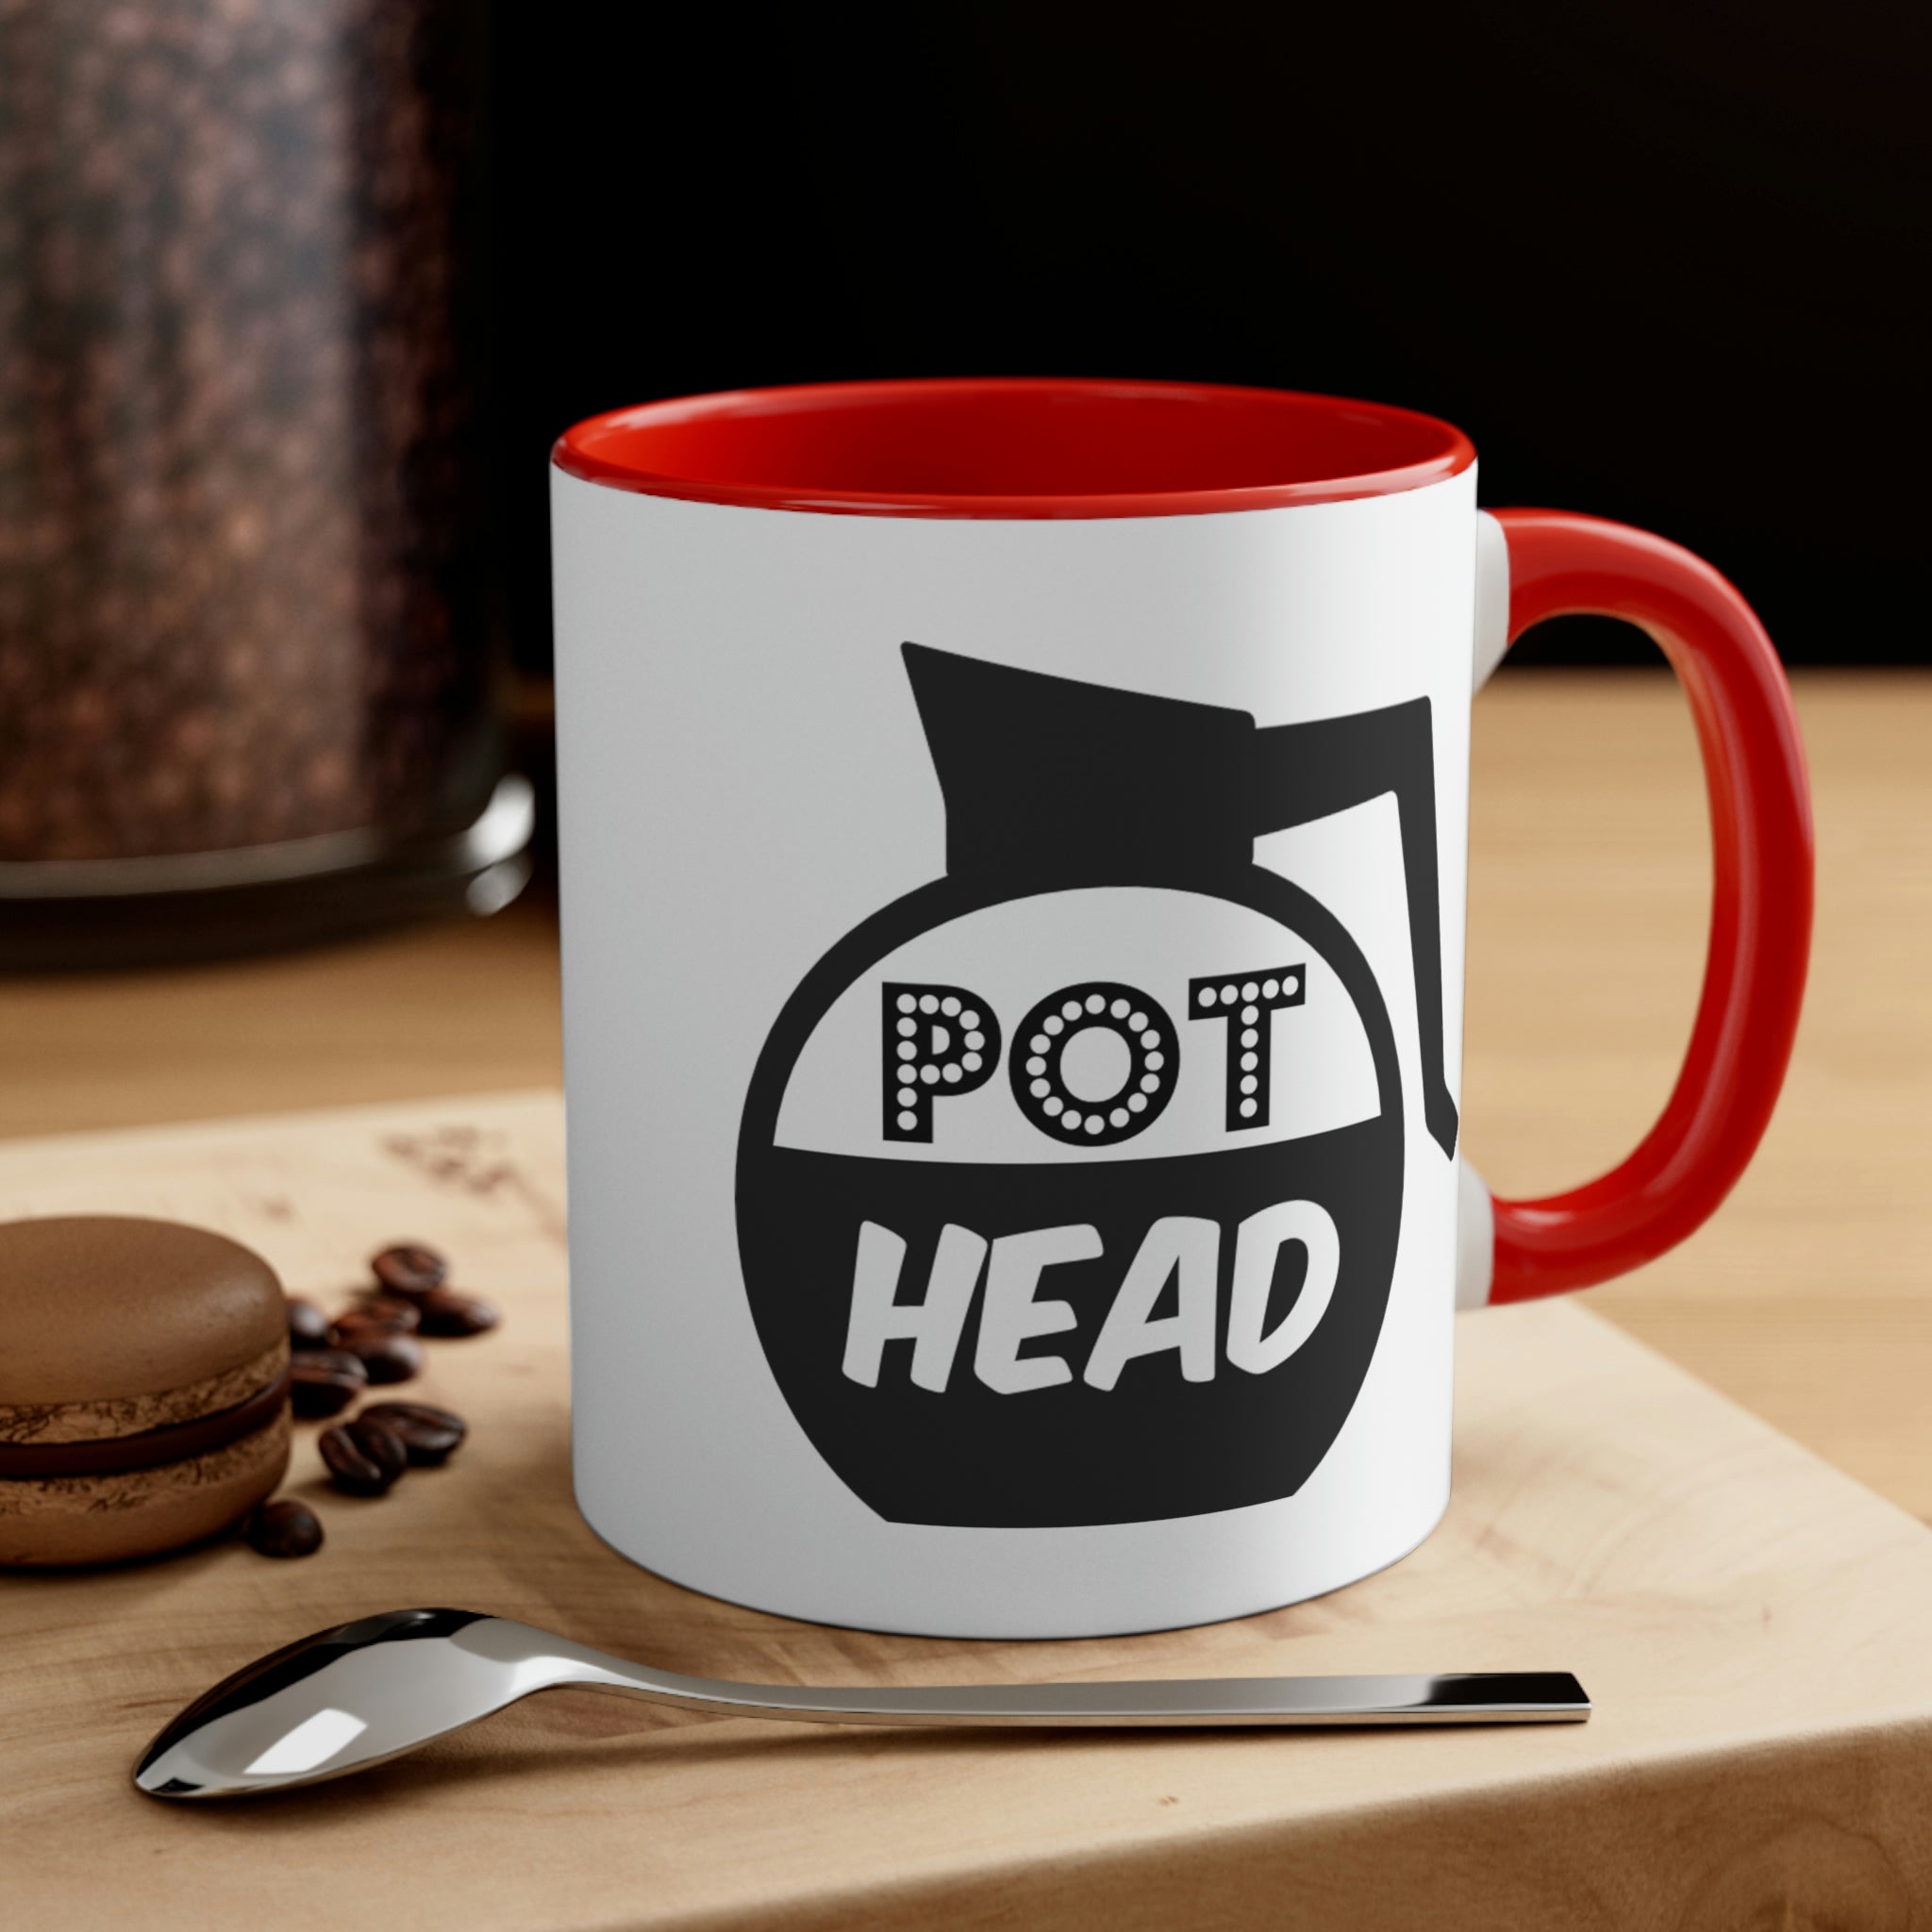 Pot Head Mug